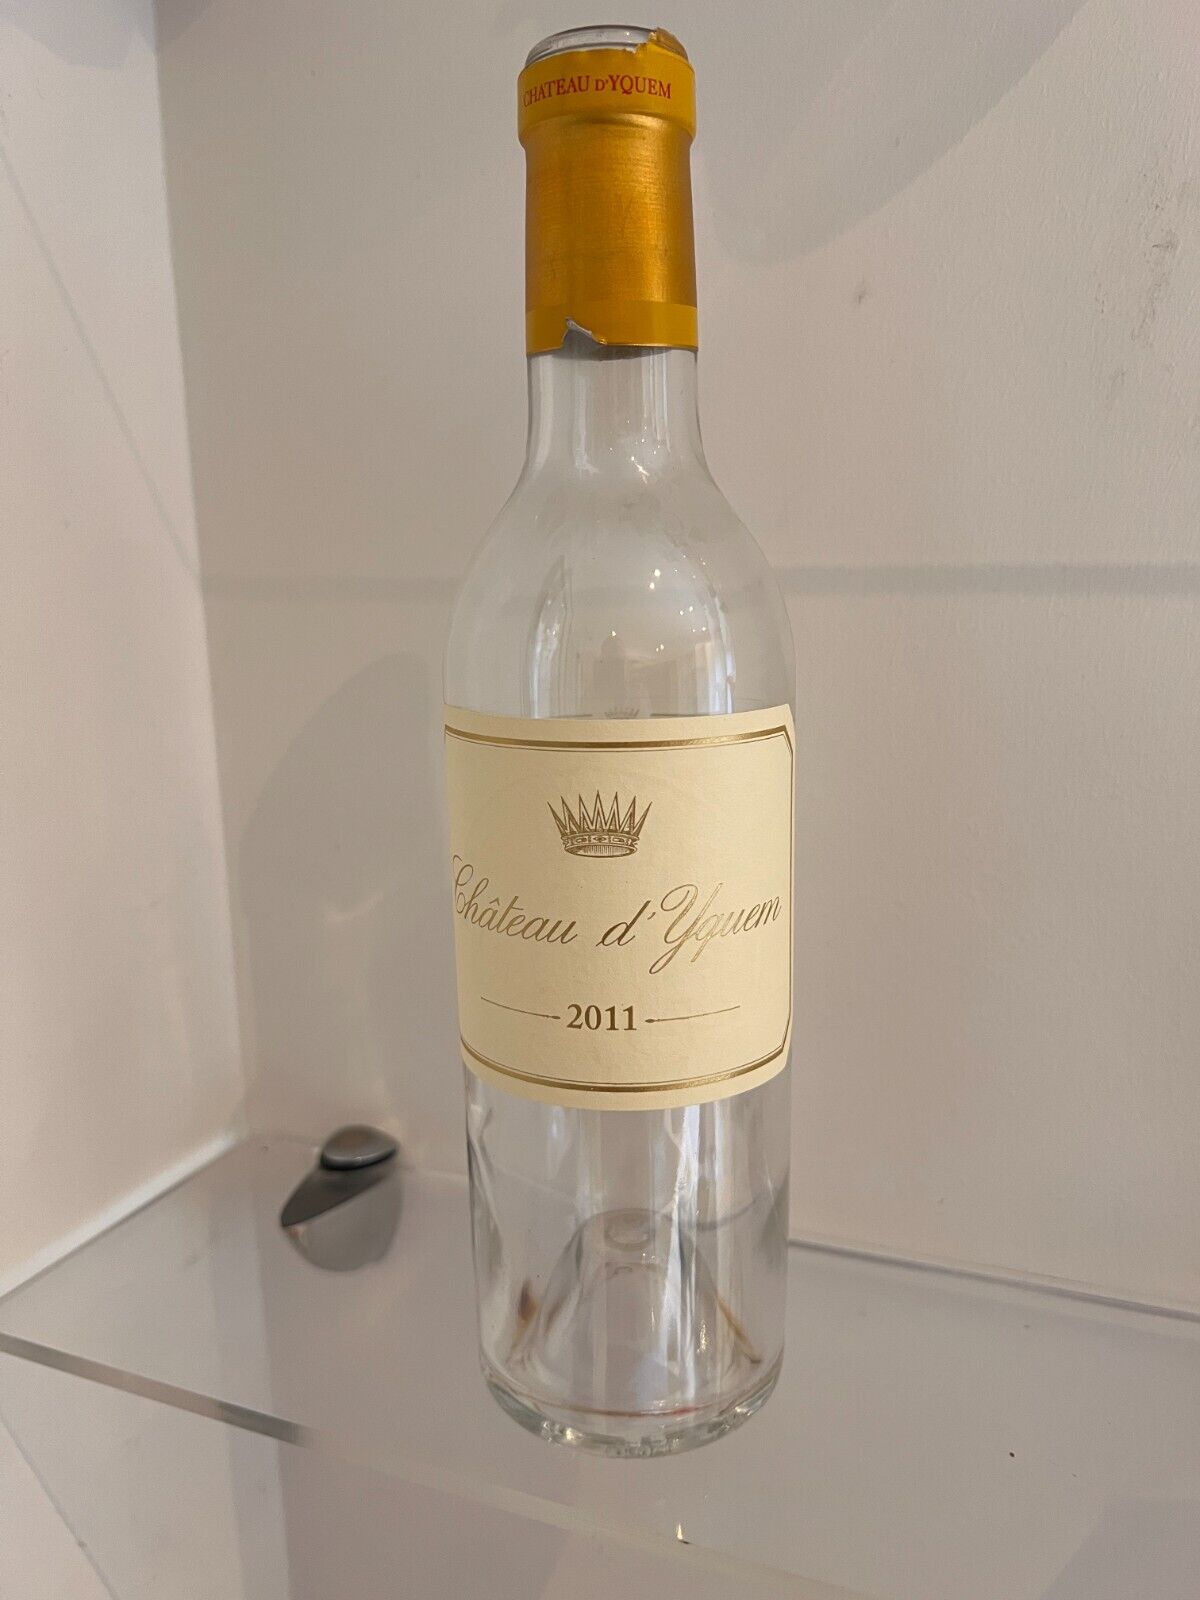 Chateau D\'Yquem 2011 Wine bottle 1/2 bottle size #1